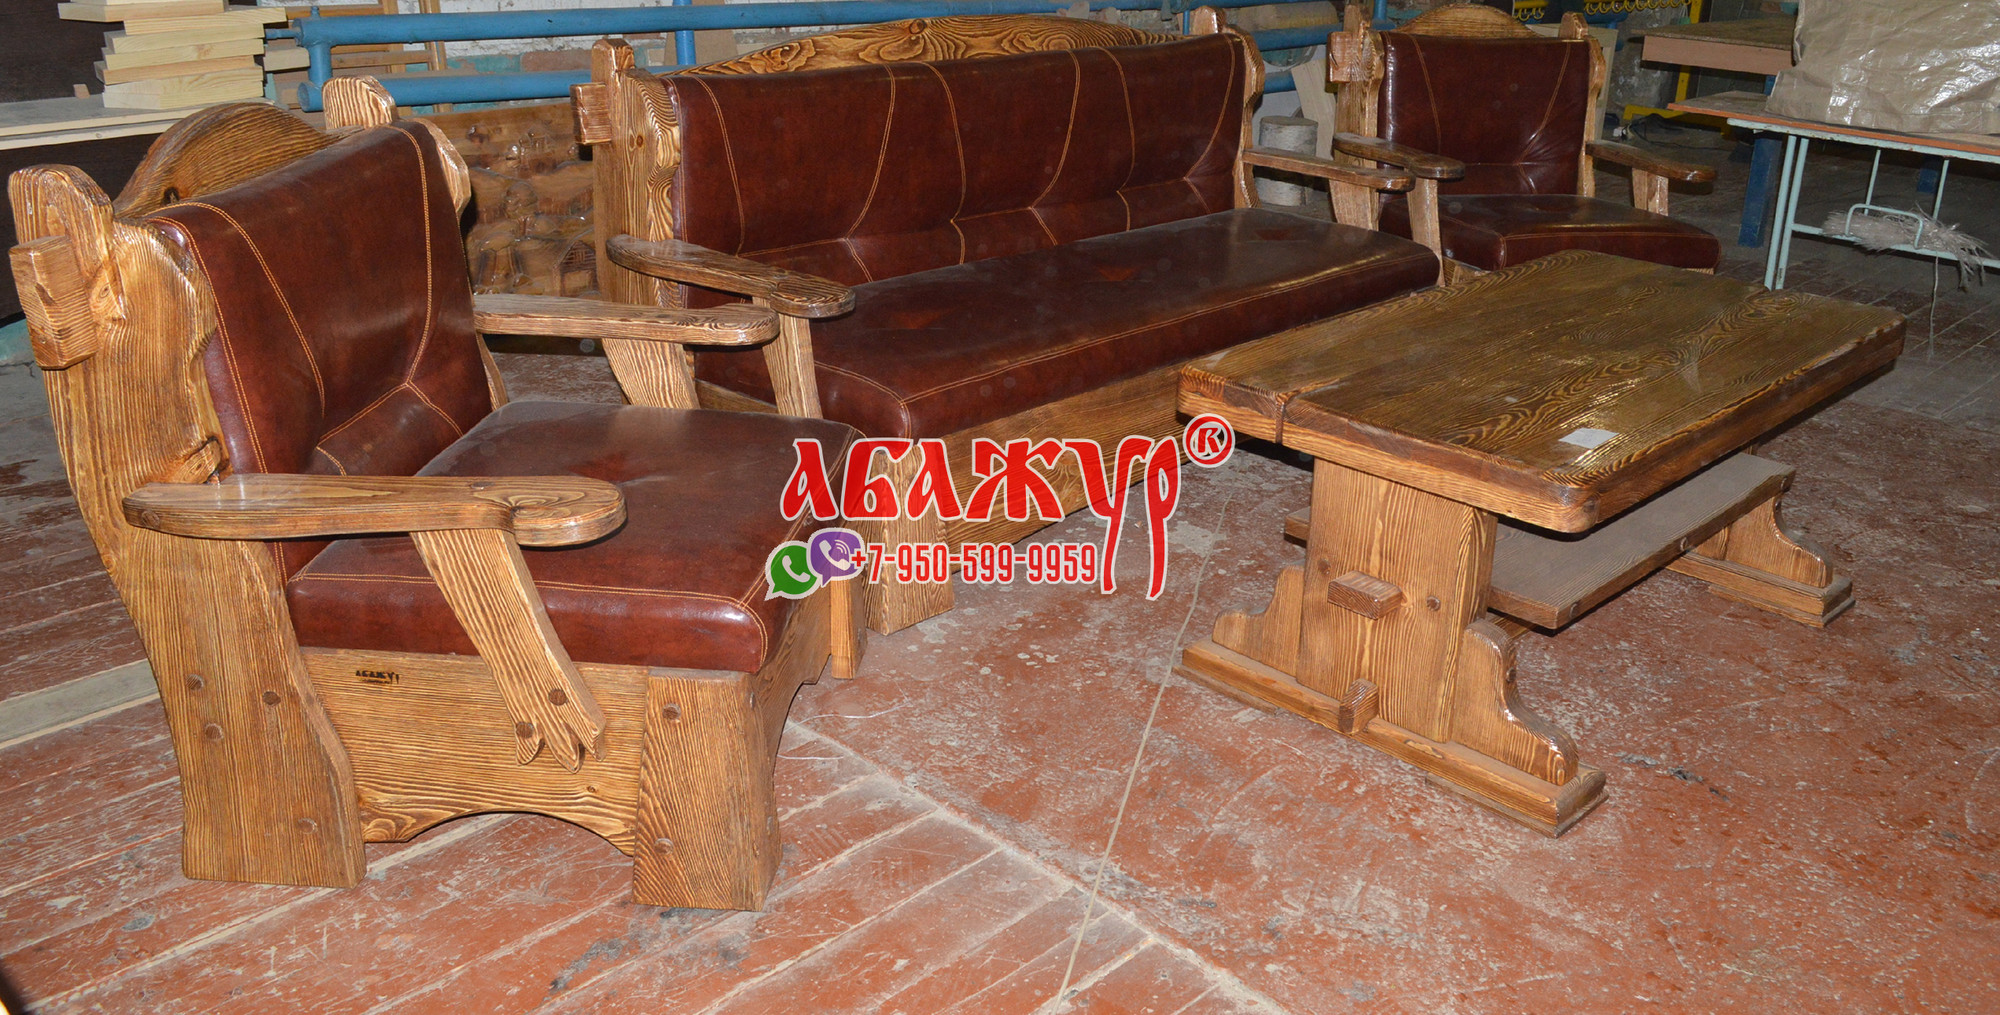 Диван и кресла с кожаным сиденьем красные под старину цена (6)